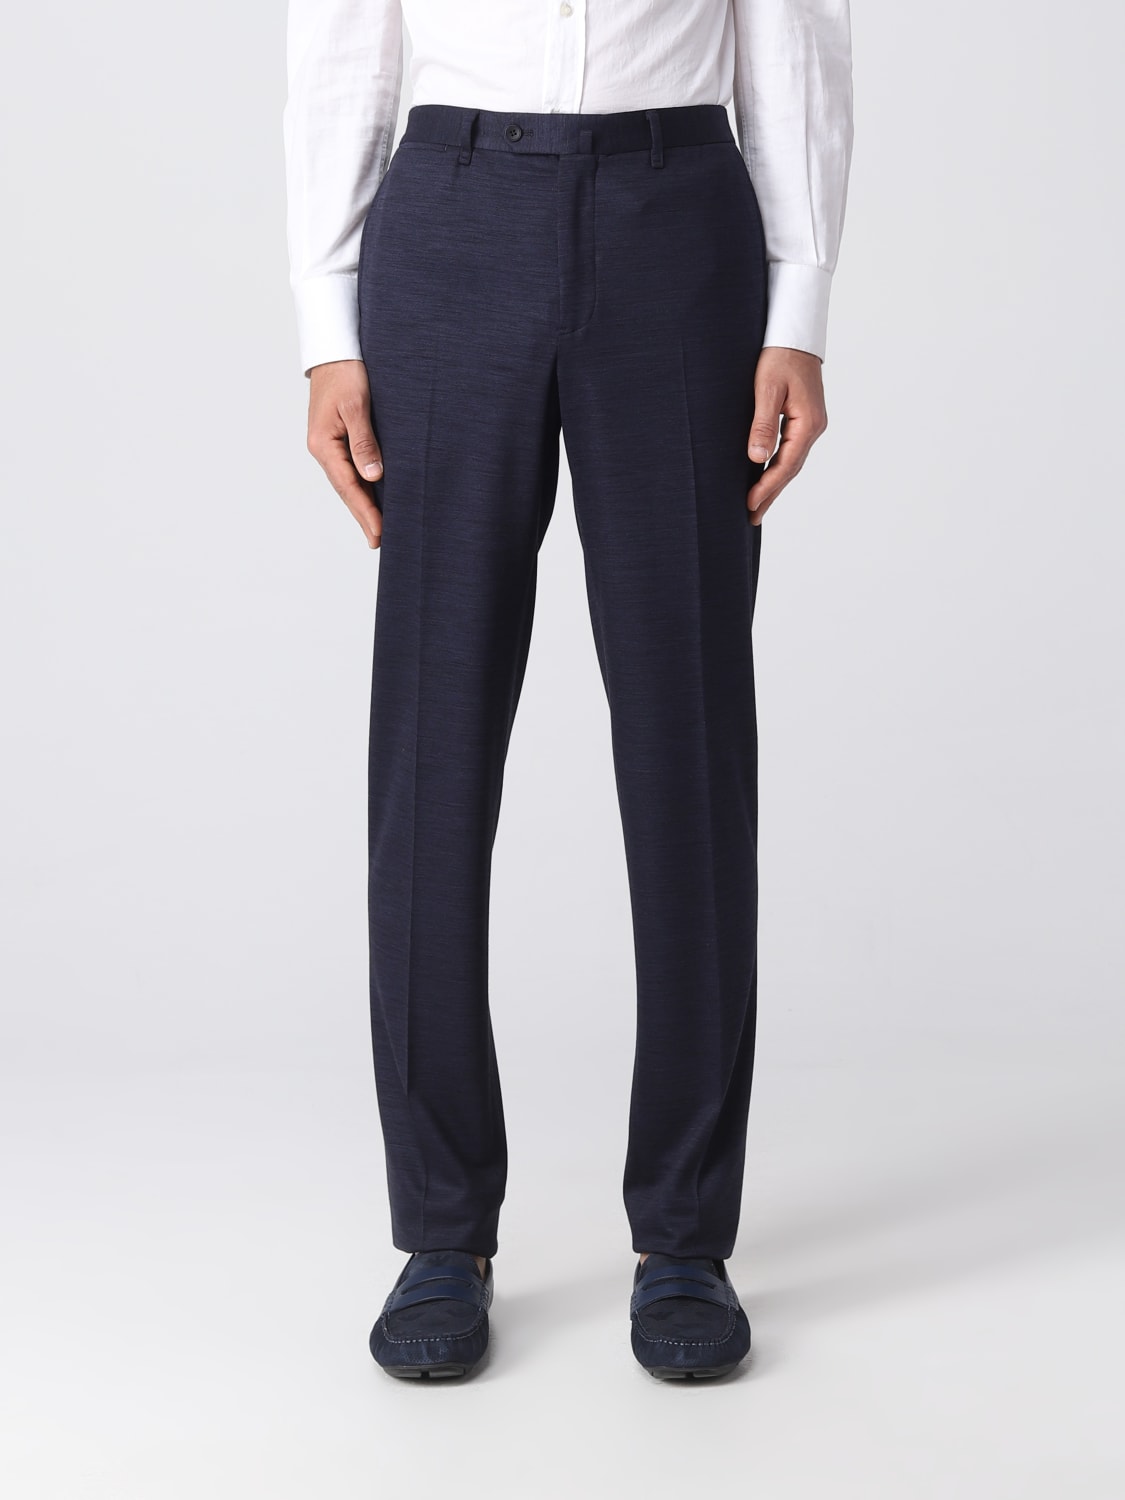 EMPORIO ARMANI: suit for man - Blue | Emporio Armani suit D41VC6D1093 ...